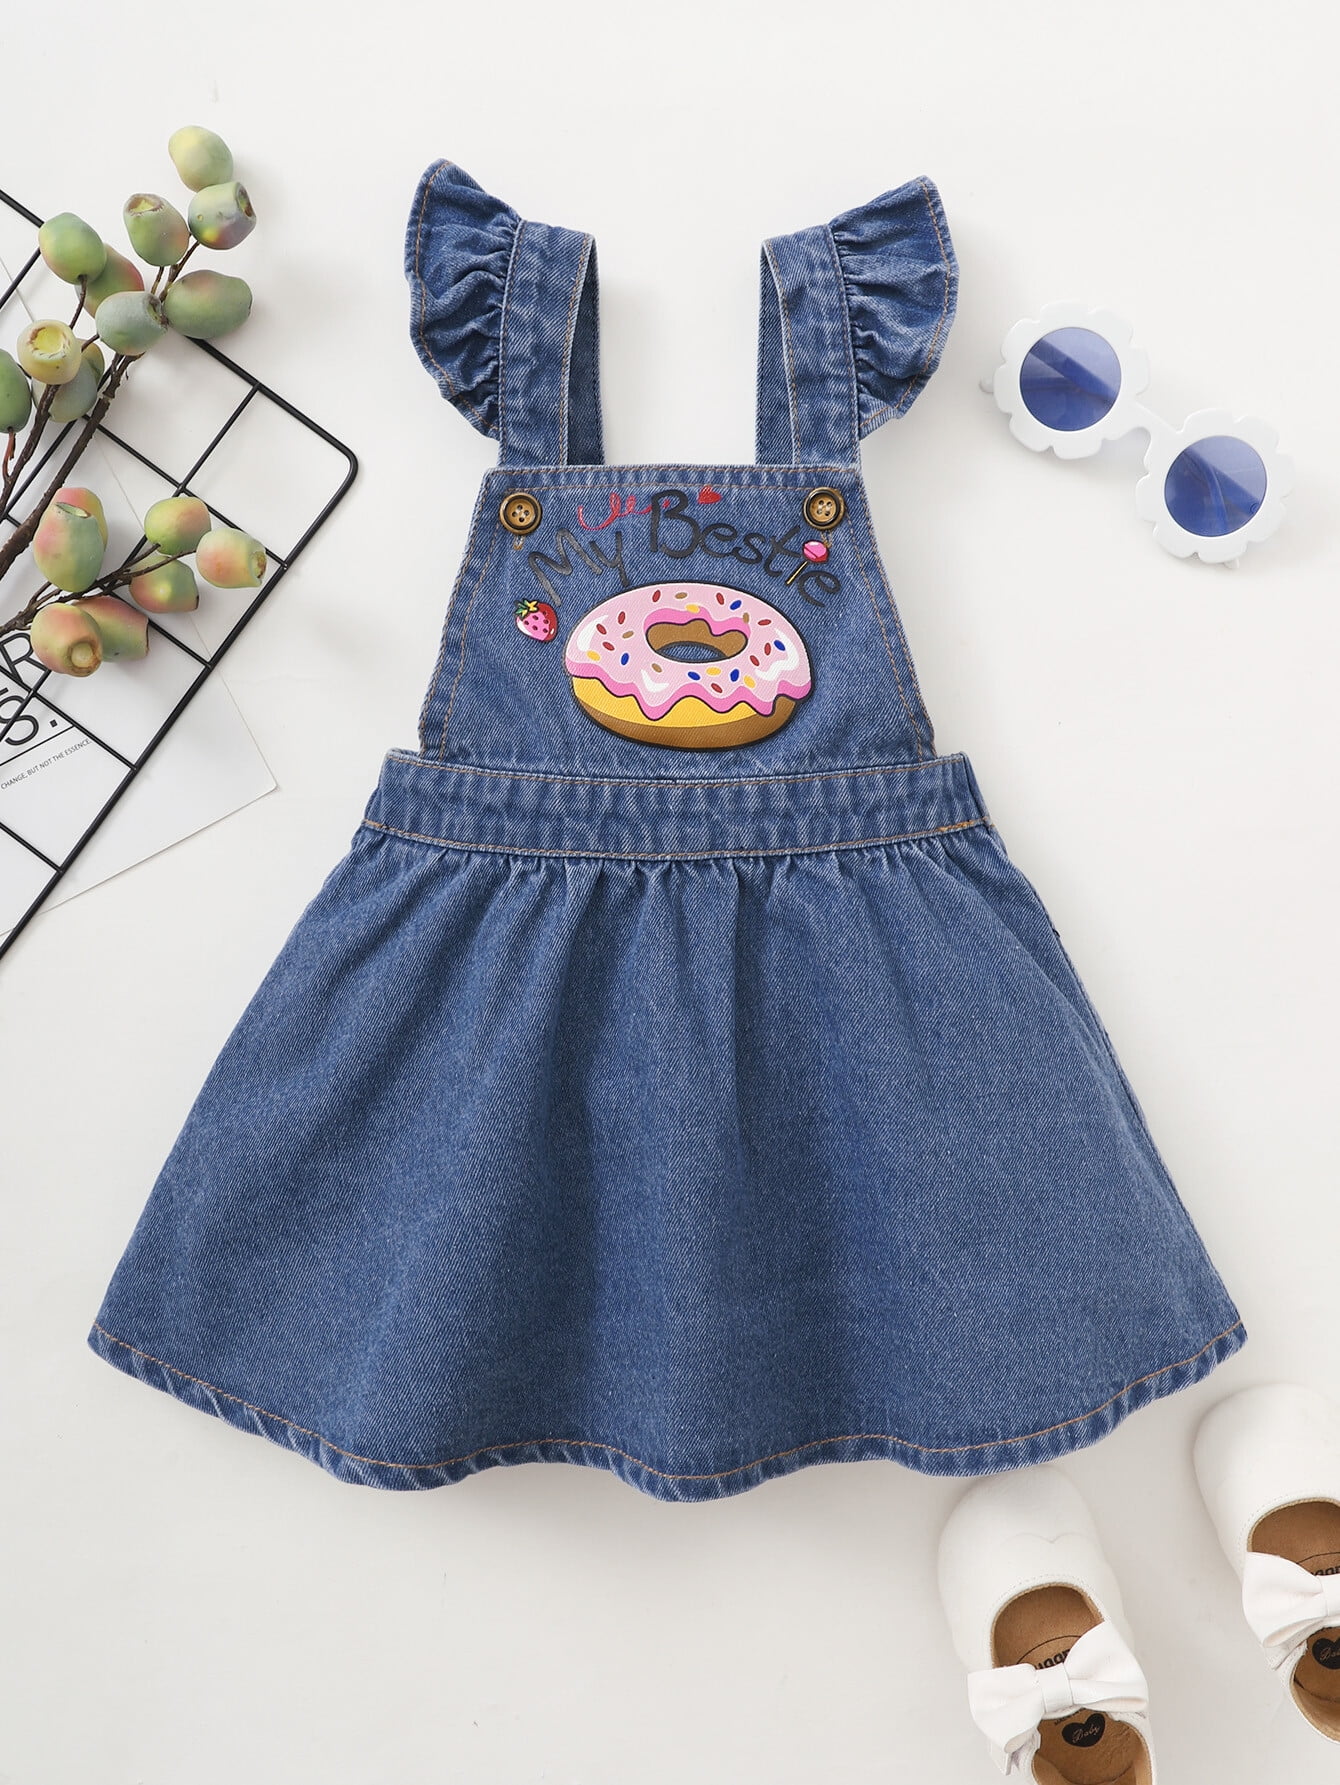 Infant Clothes Baby Girls Dress Sleeveless Suspender Jeans Summer Denim Dress Blue Months - Walmart.com